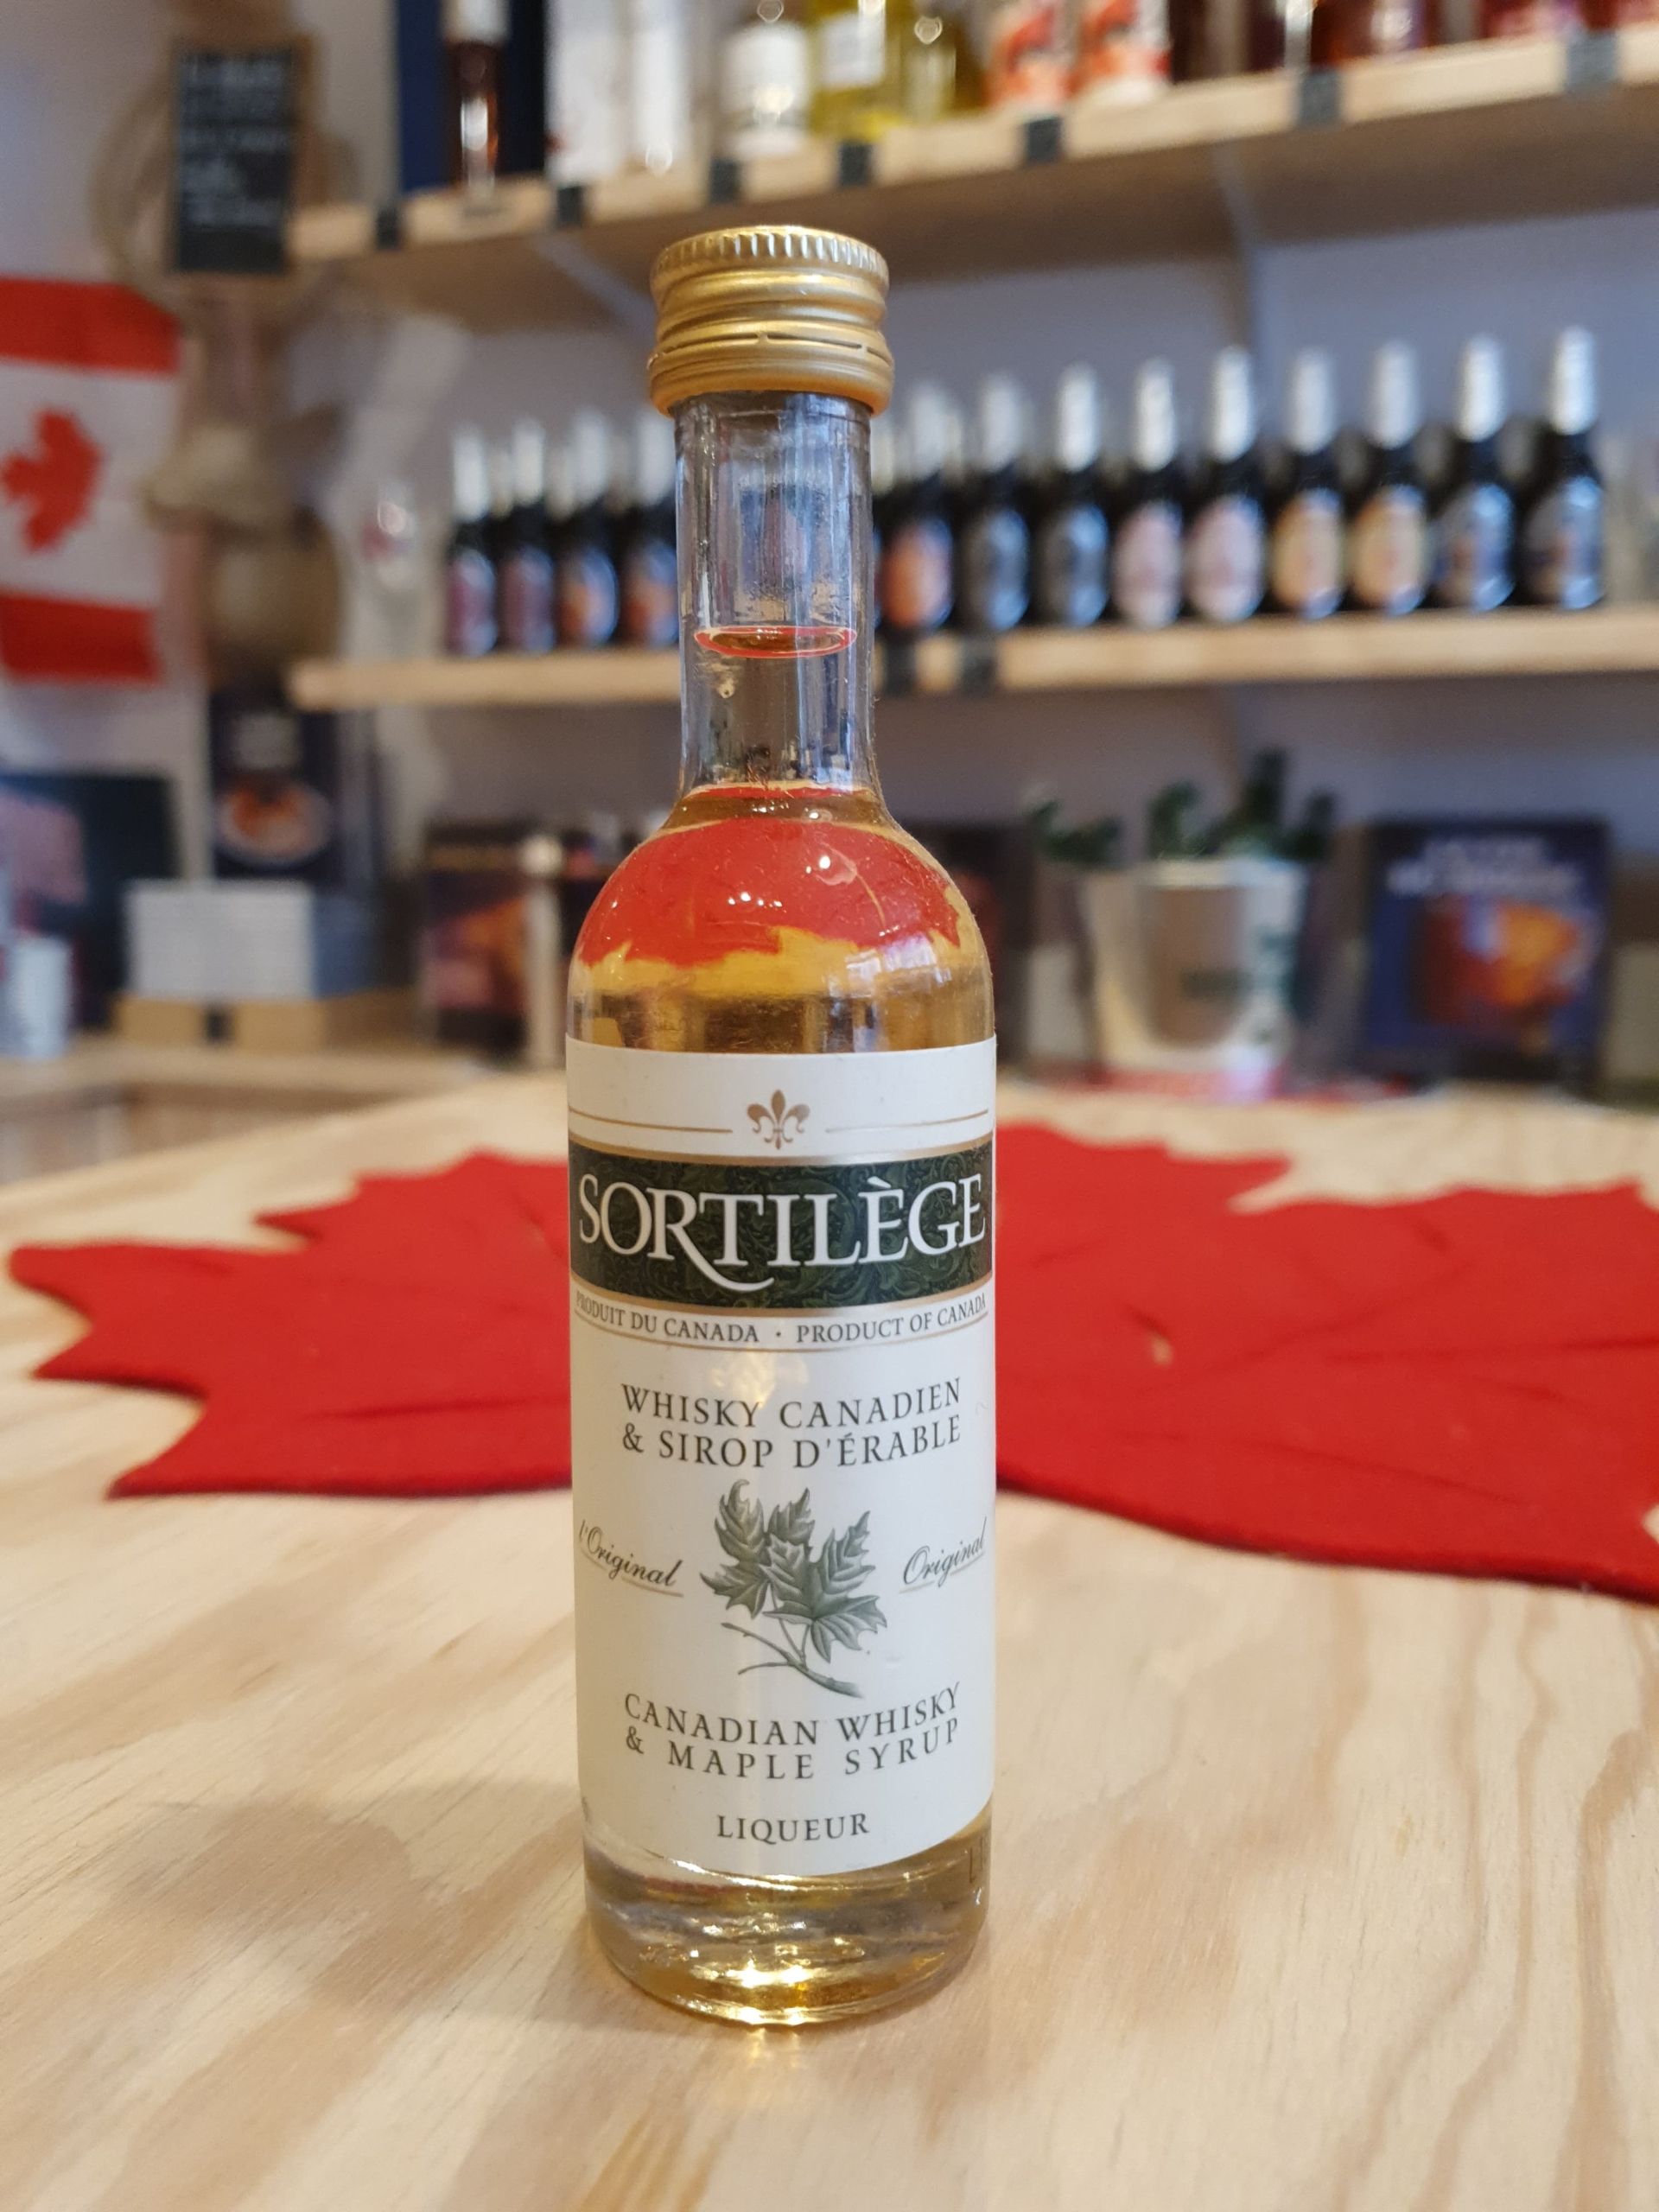 SORTILÈGE Liqueur de Whisky Canadien au Sirop d'érable